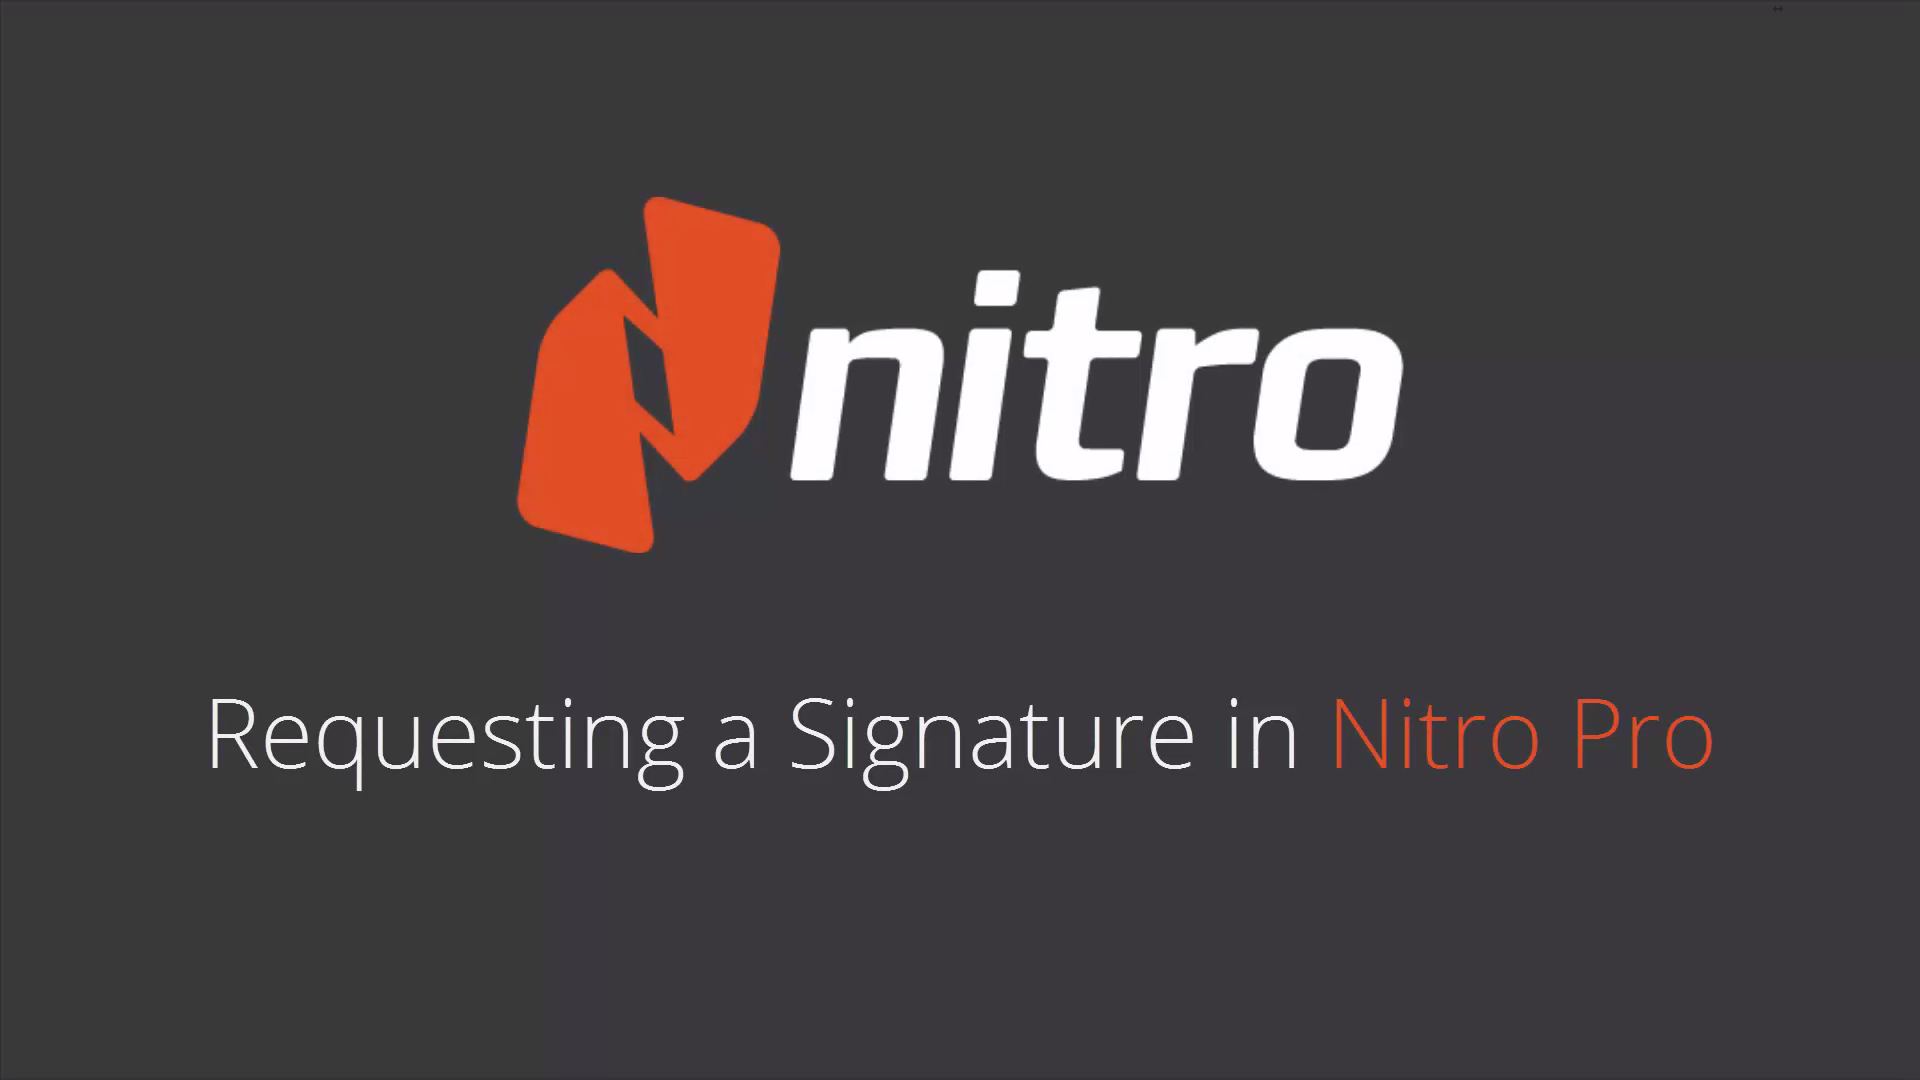 About Nitro